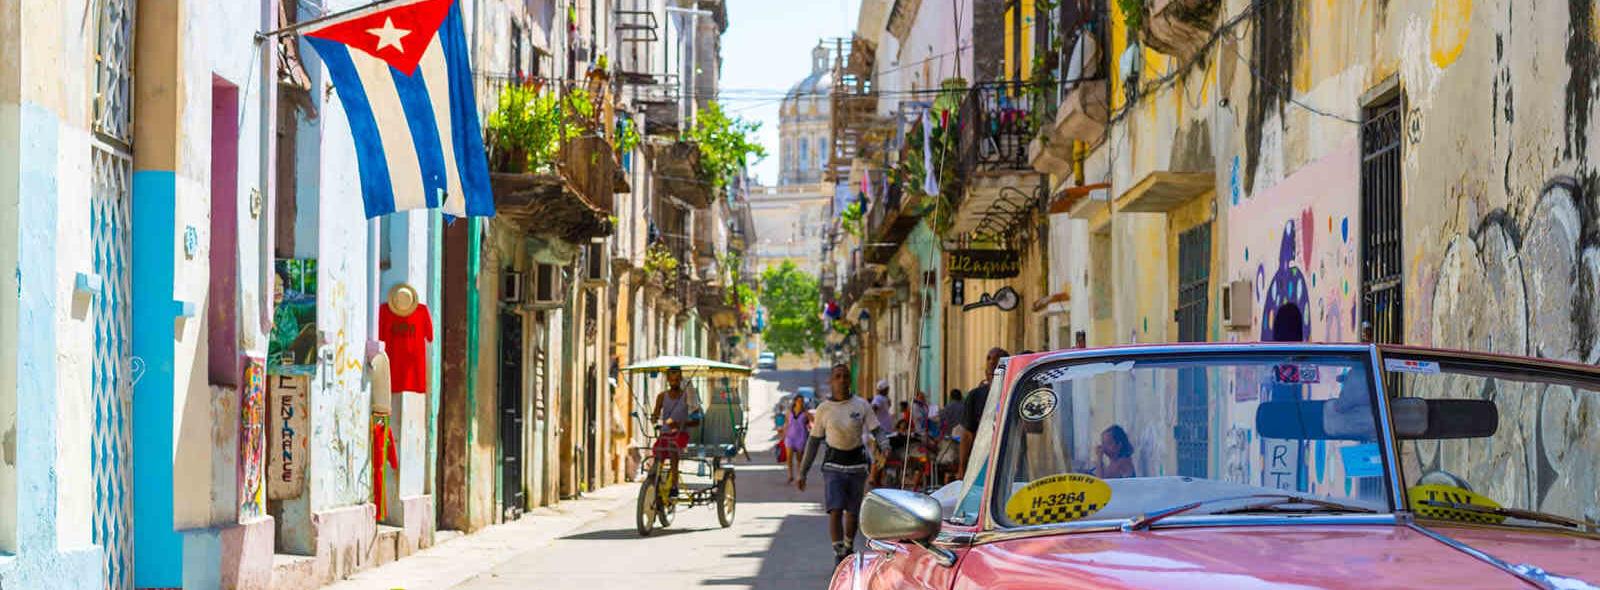 oude straat havana met roze auto en cubaanse vlag